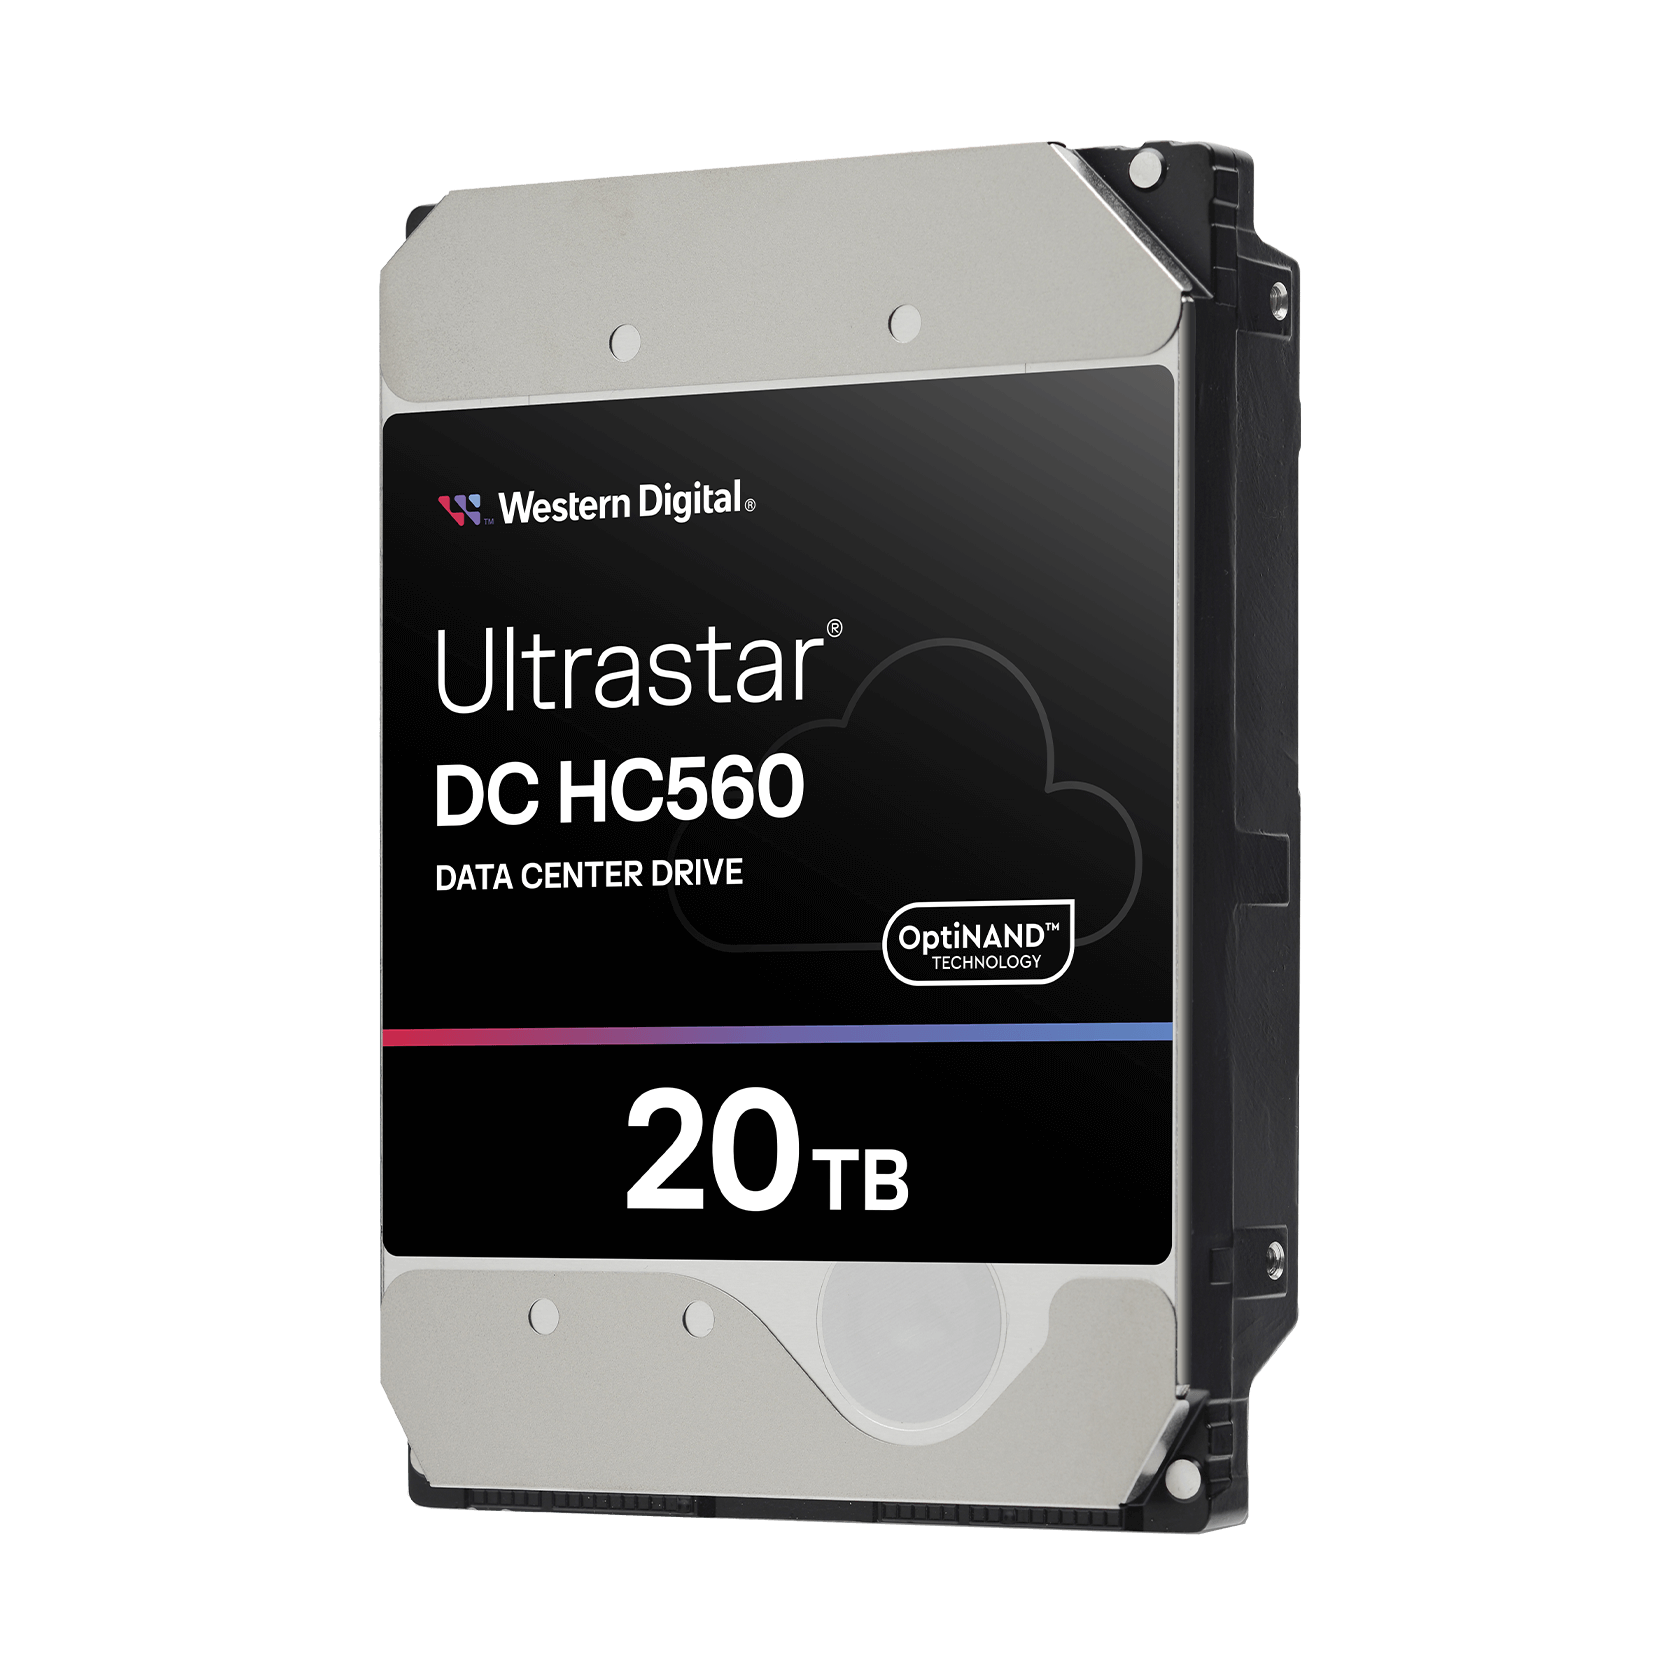 Western Digital 20TB Ultrastar® DC HC560 - - 0F38784